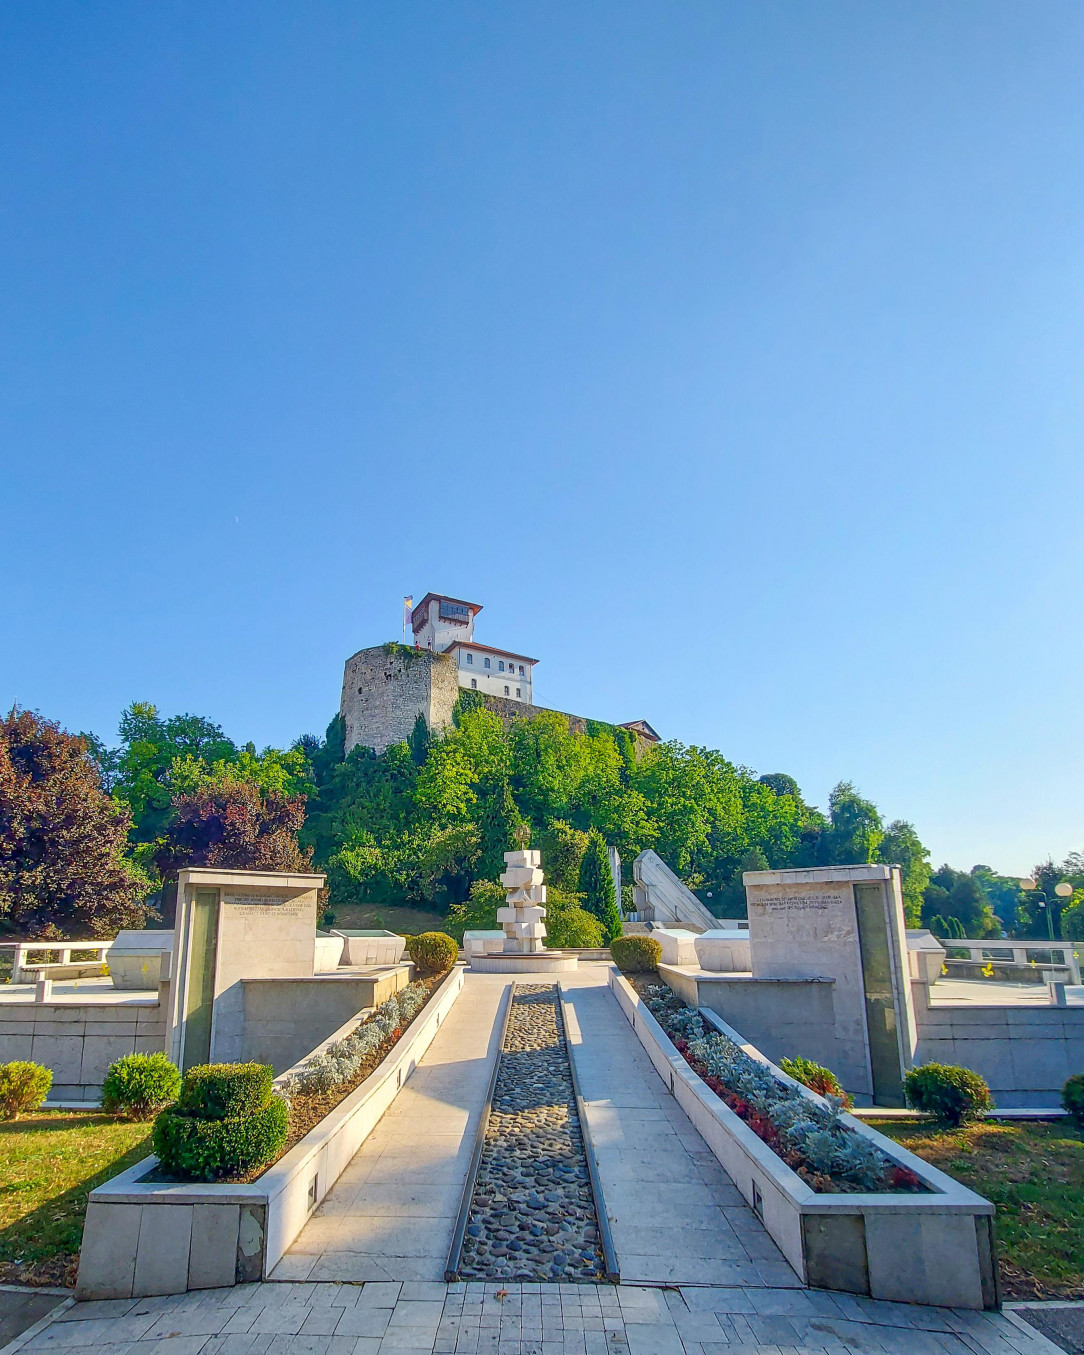 The Gradačac castle, Bosnia and Herzegovina